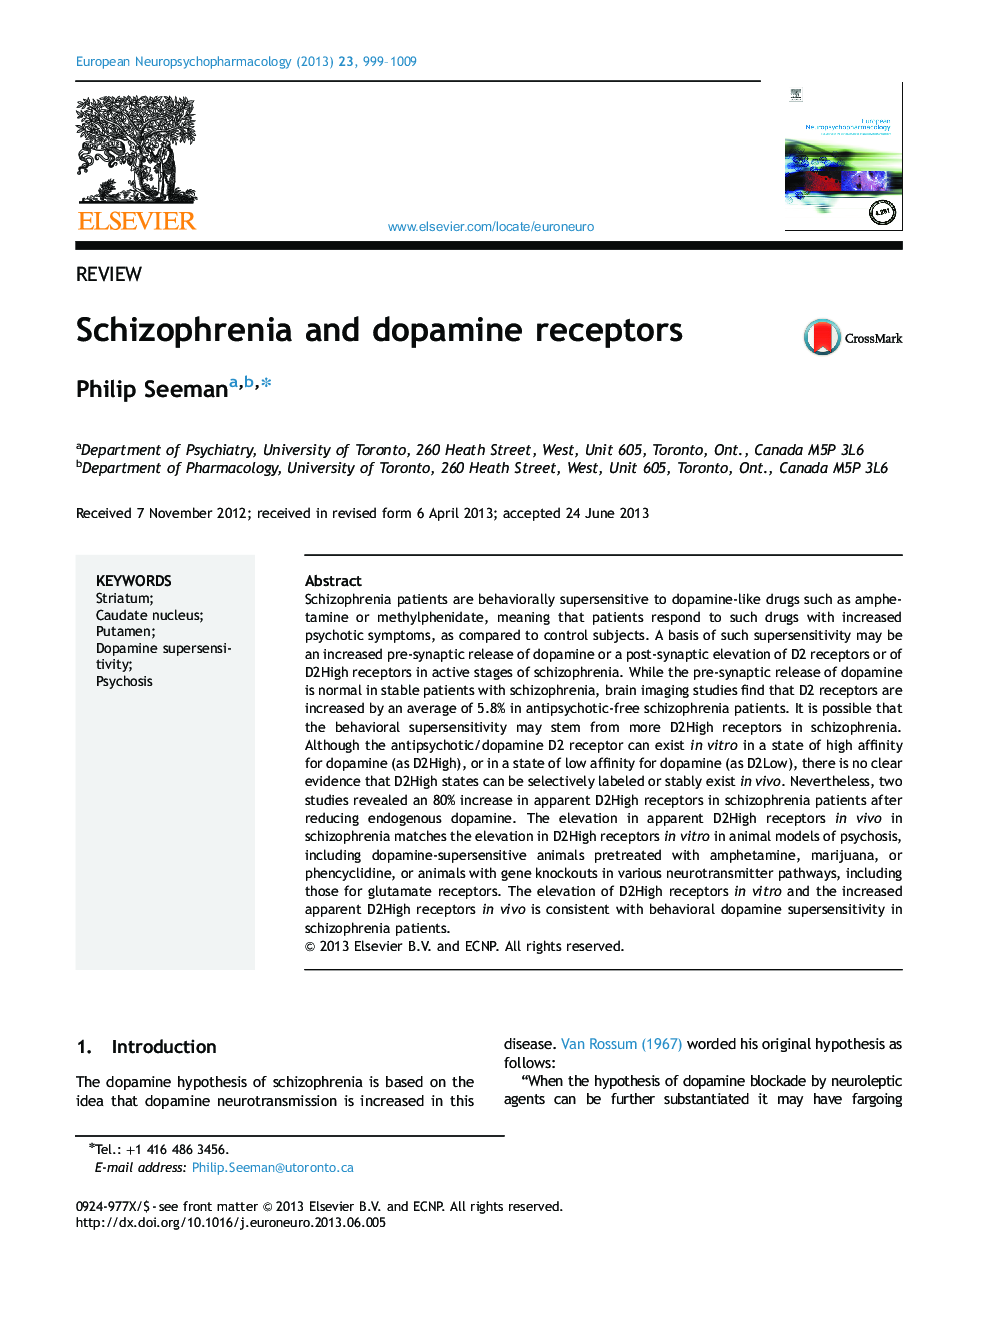 Schizophrenia and dopamine receptors